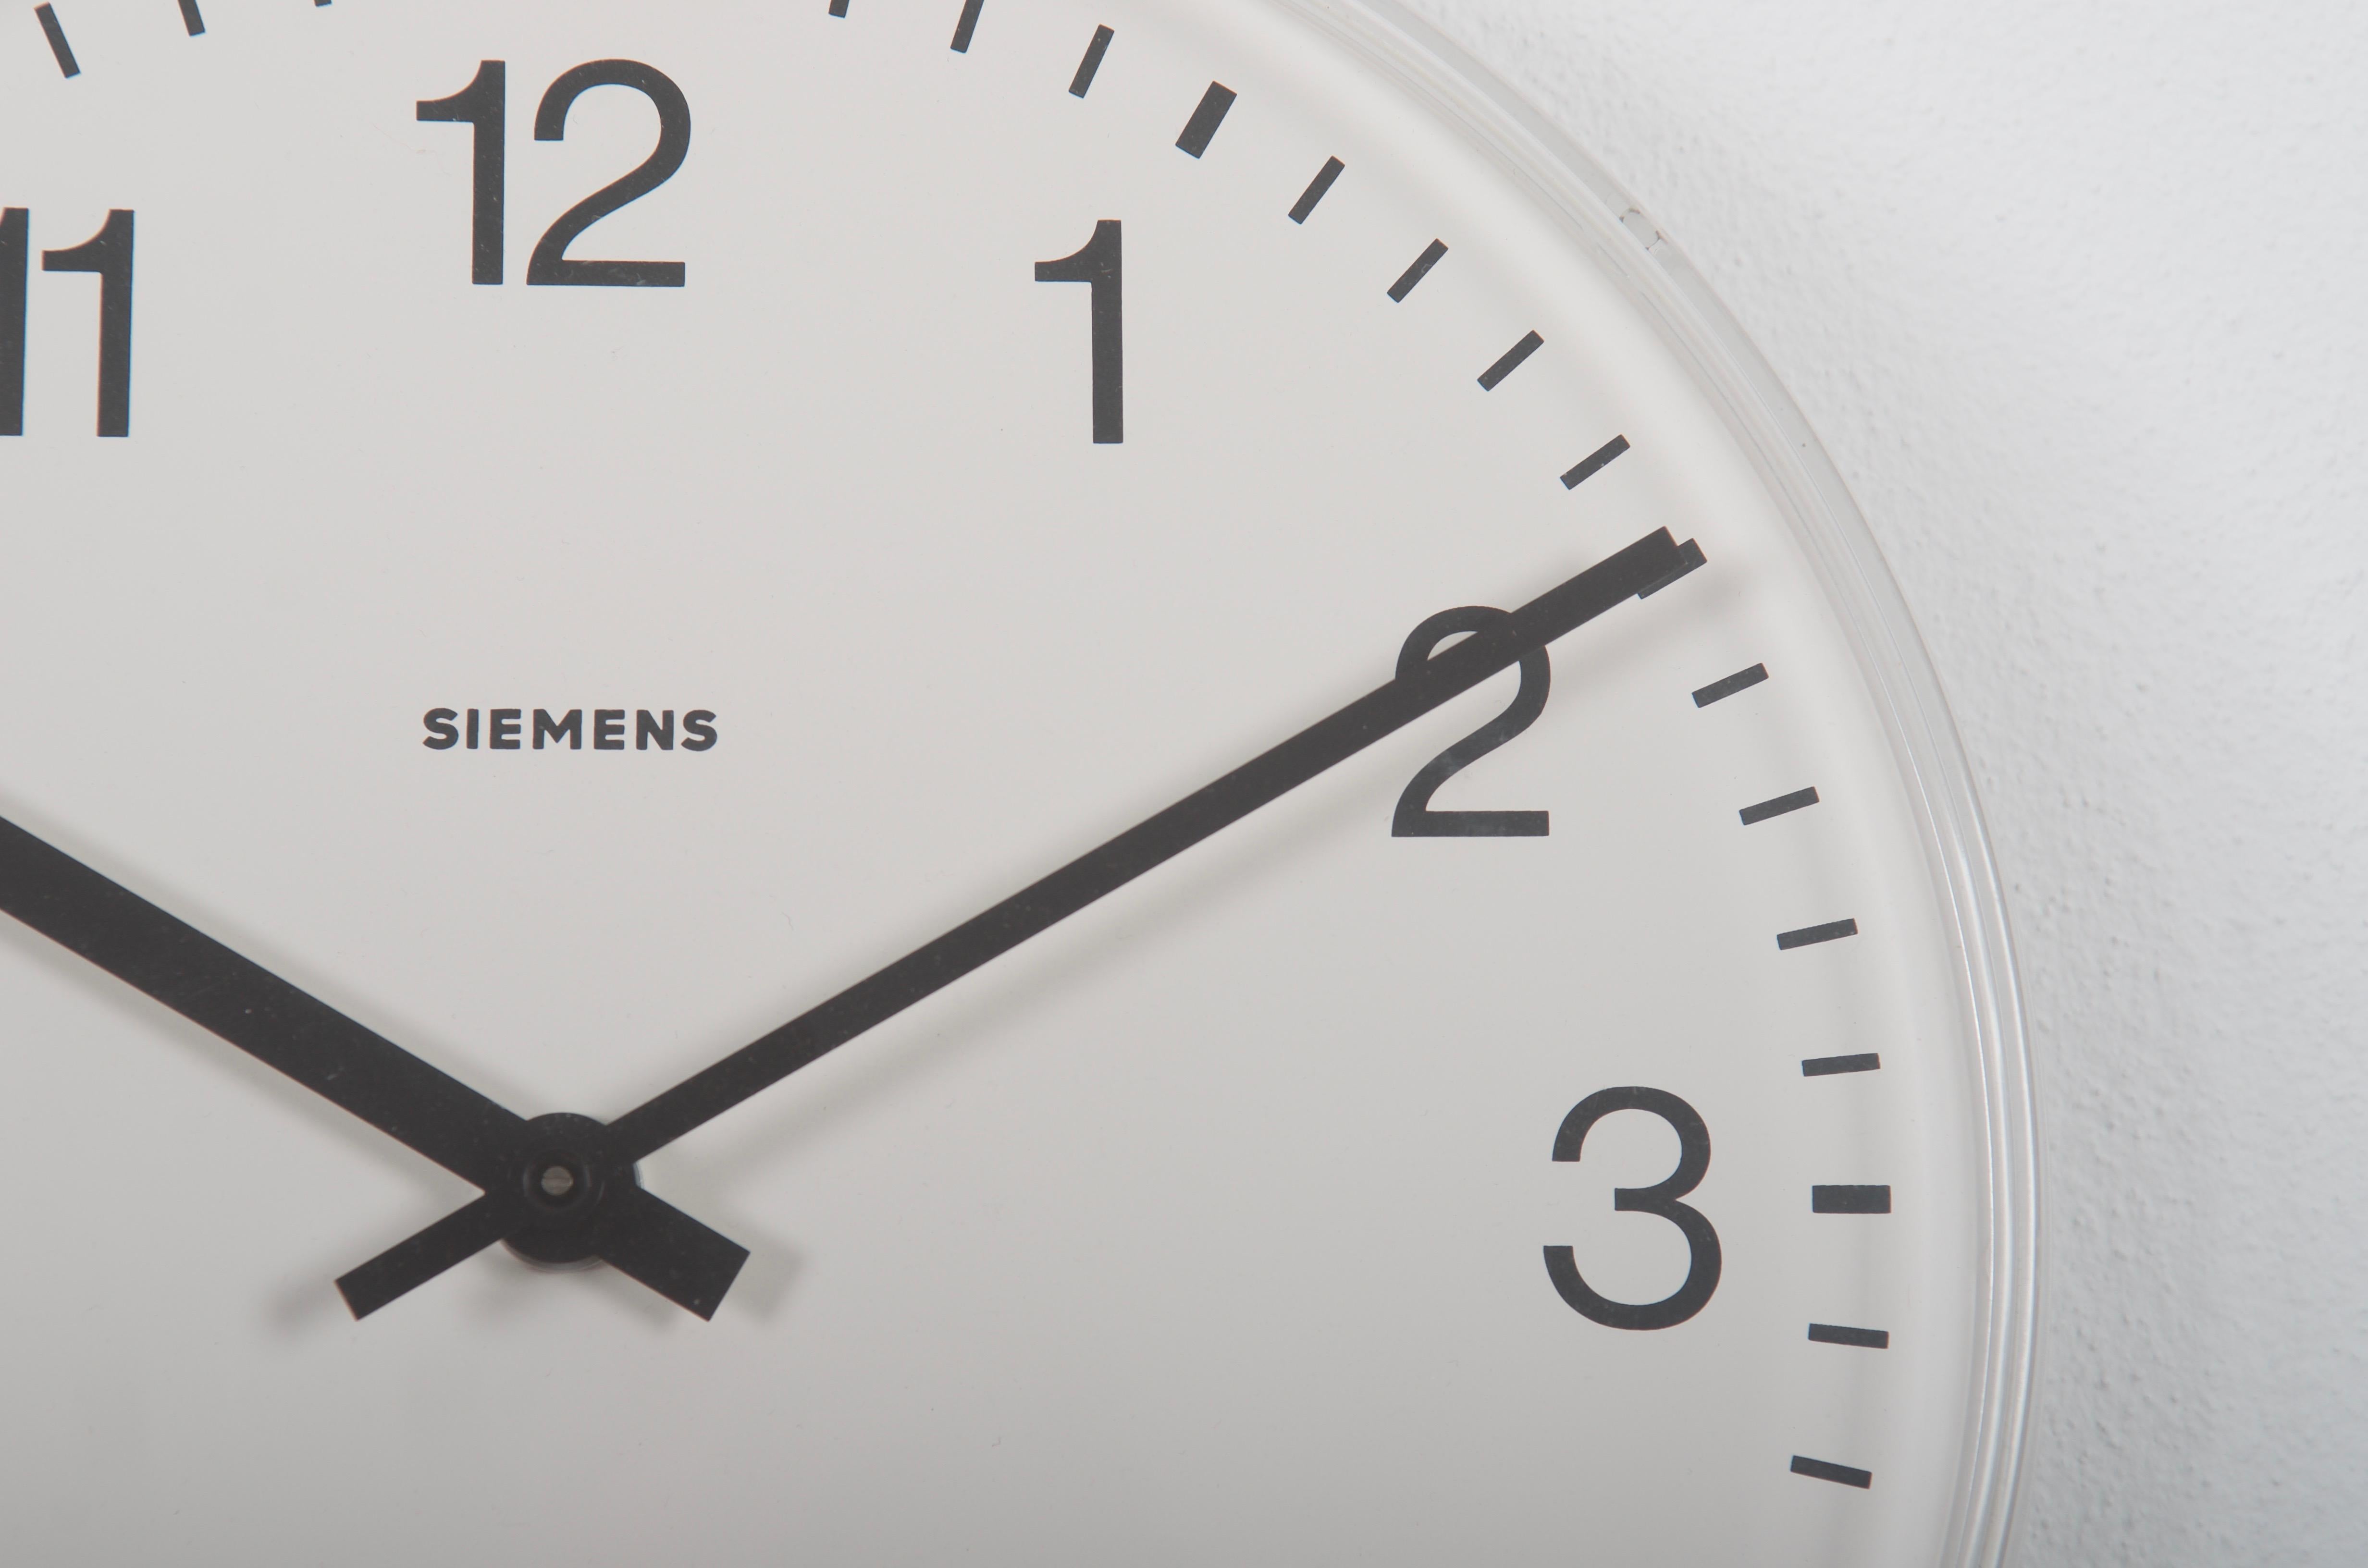 Deutsche Bahnhofsuhr von Siemens aus den späten 1970er Jahren.
Ehemals als Nebenuhr mit mechanischem Uhrwerk, ist sie heute mit einem modernen Quarzwerk mit Batterie ausgestattet.
Kunststoffrahmen mit Acrylglasfront.